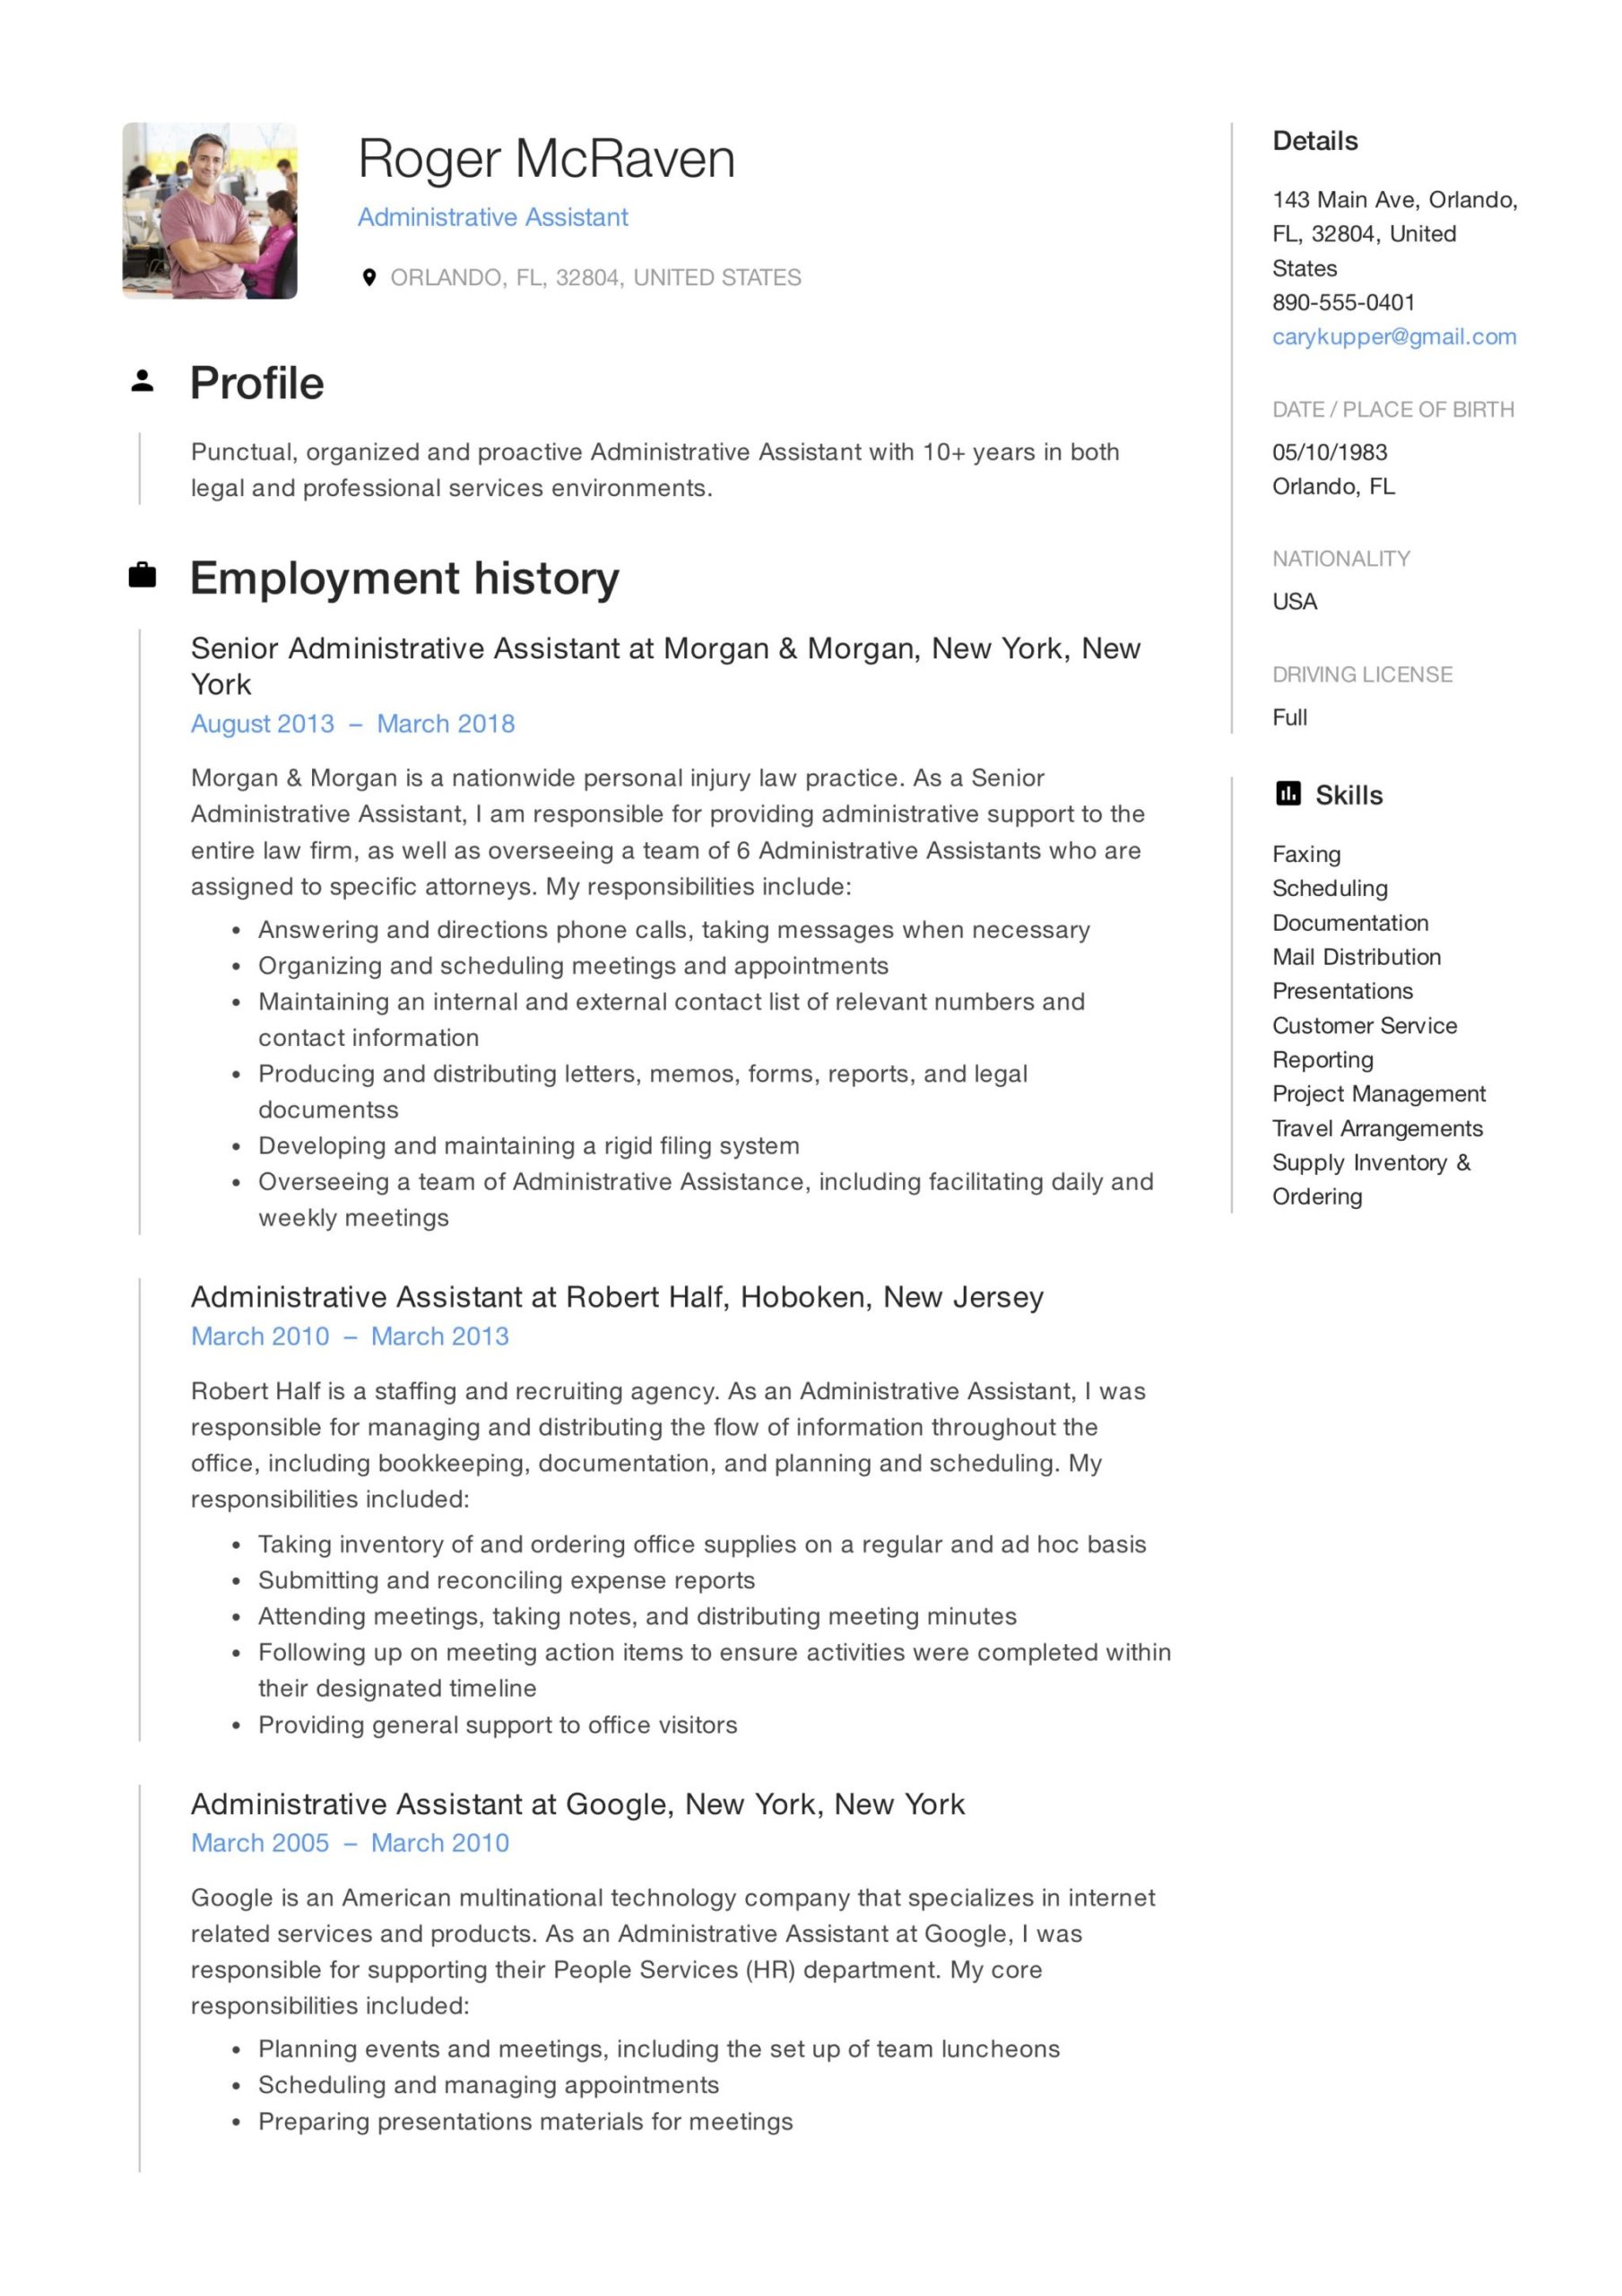 Sample Resume Headline for Administrative assistant 19 Administrative assistant Resumes & Guide Pdf 2022